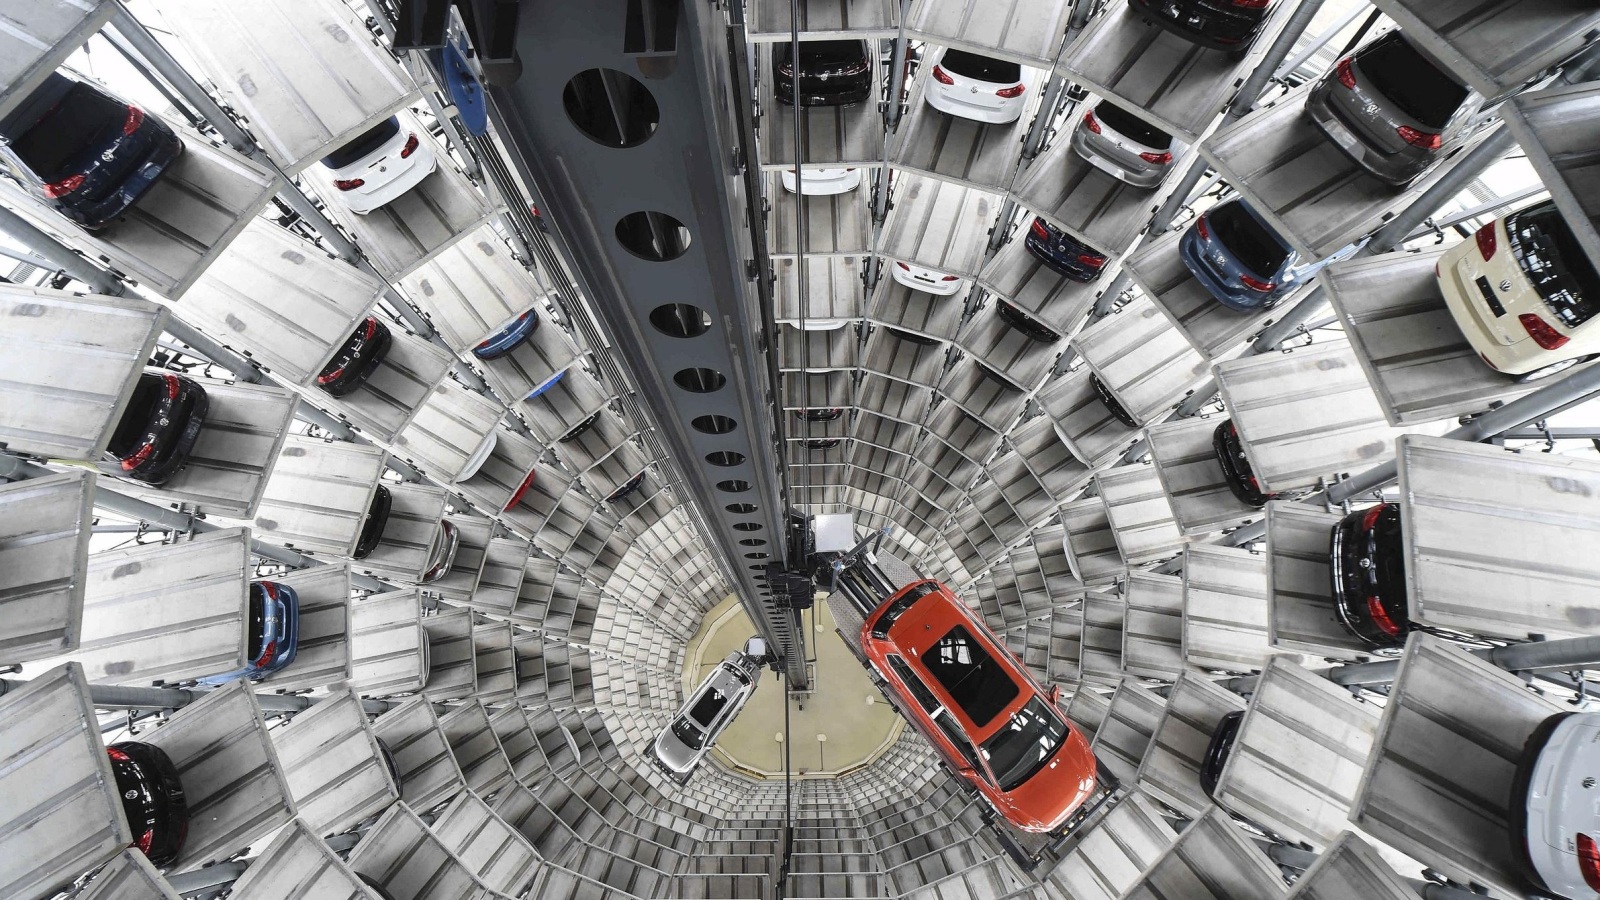 مستودع لسيارات فولكس فاغن باسات وغولف في برج تابع للشركة بألمانيا (رويترز)